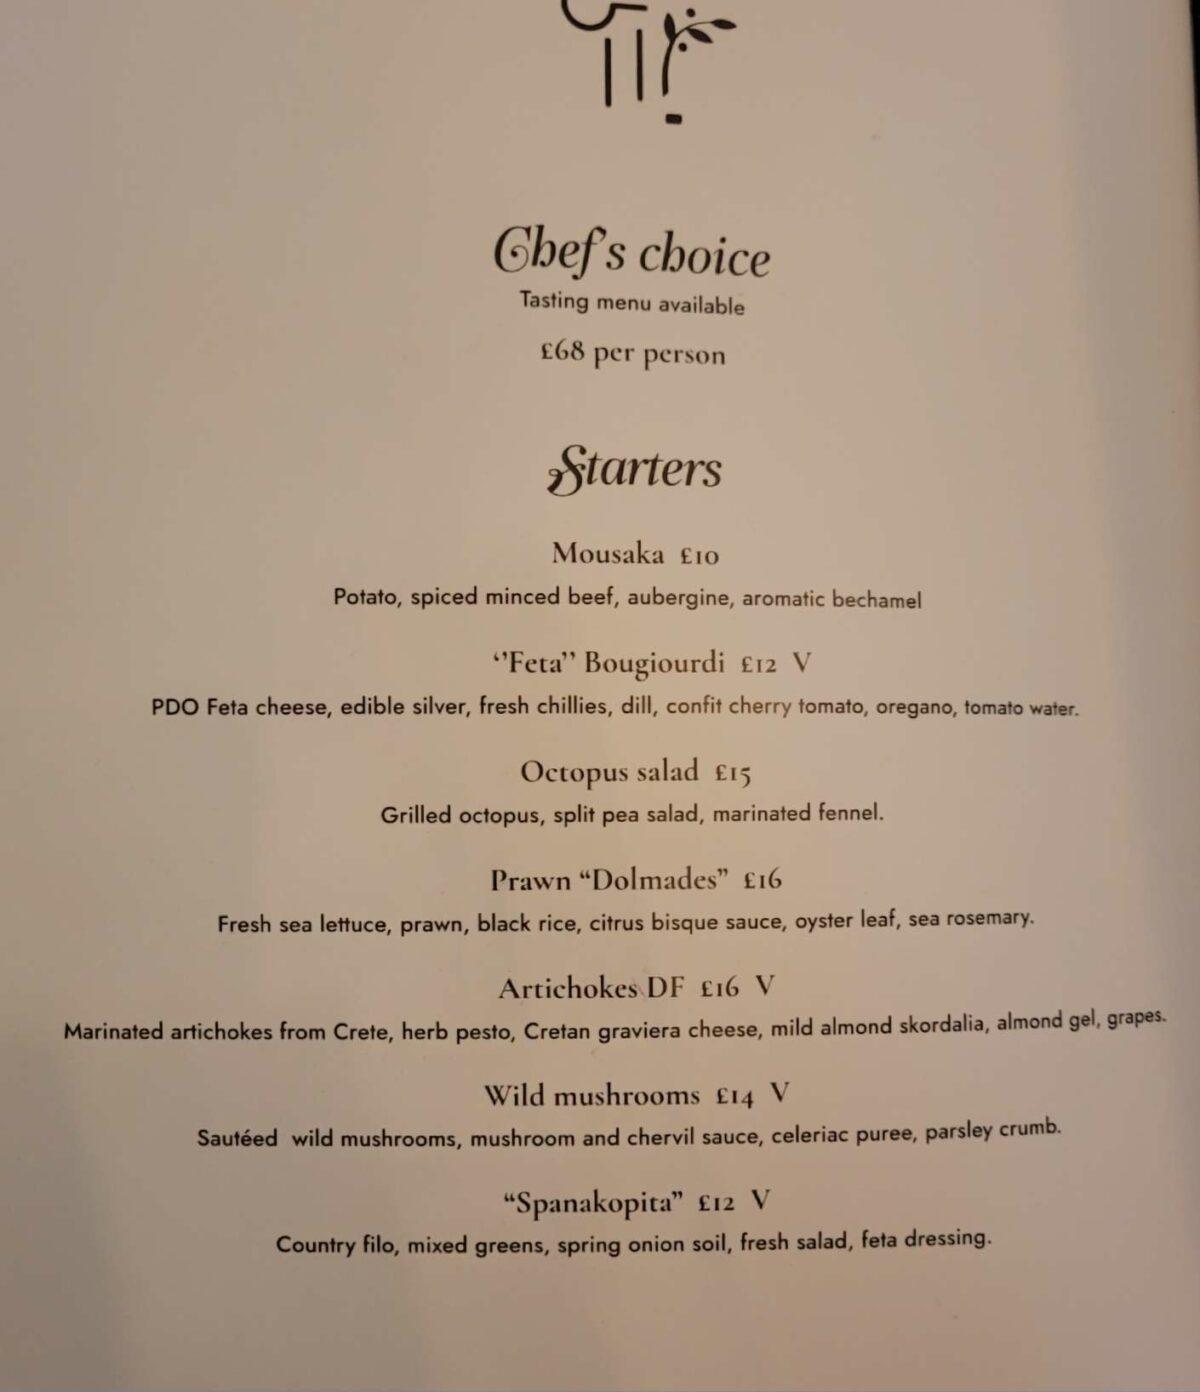 Kuzina Greek restaurant Edinburgh menu 